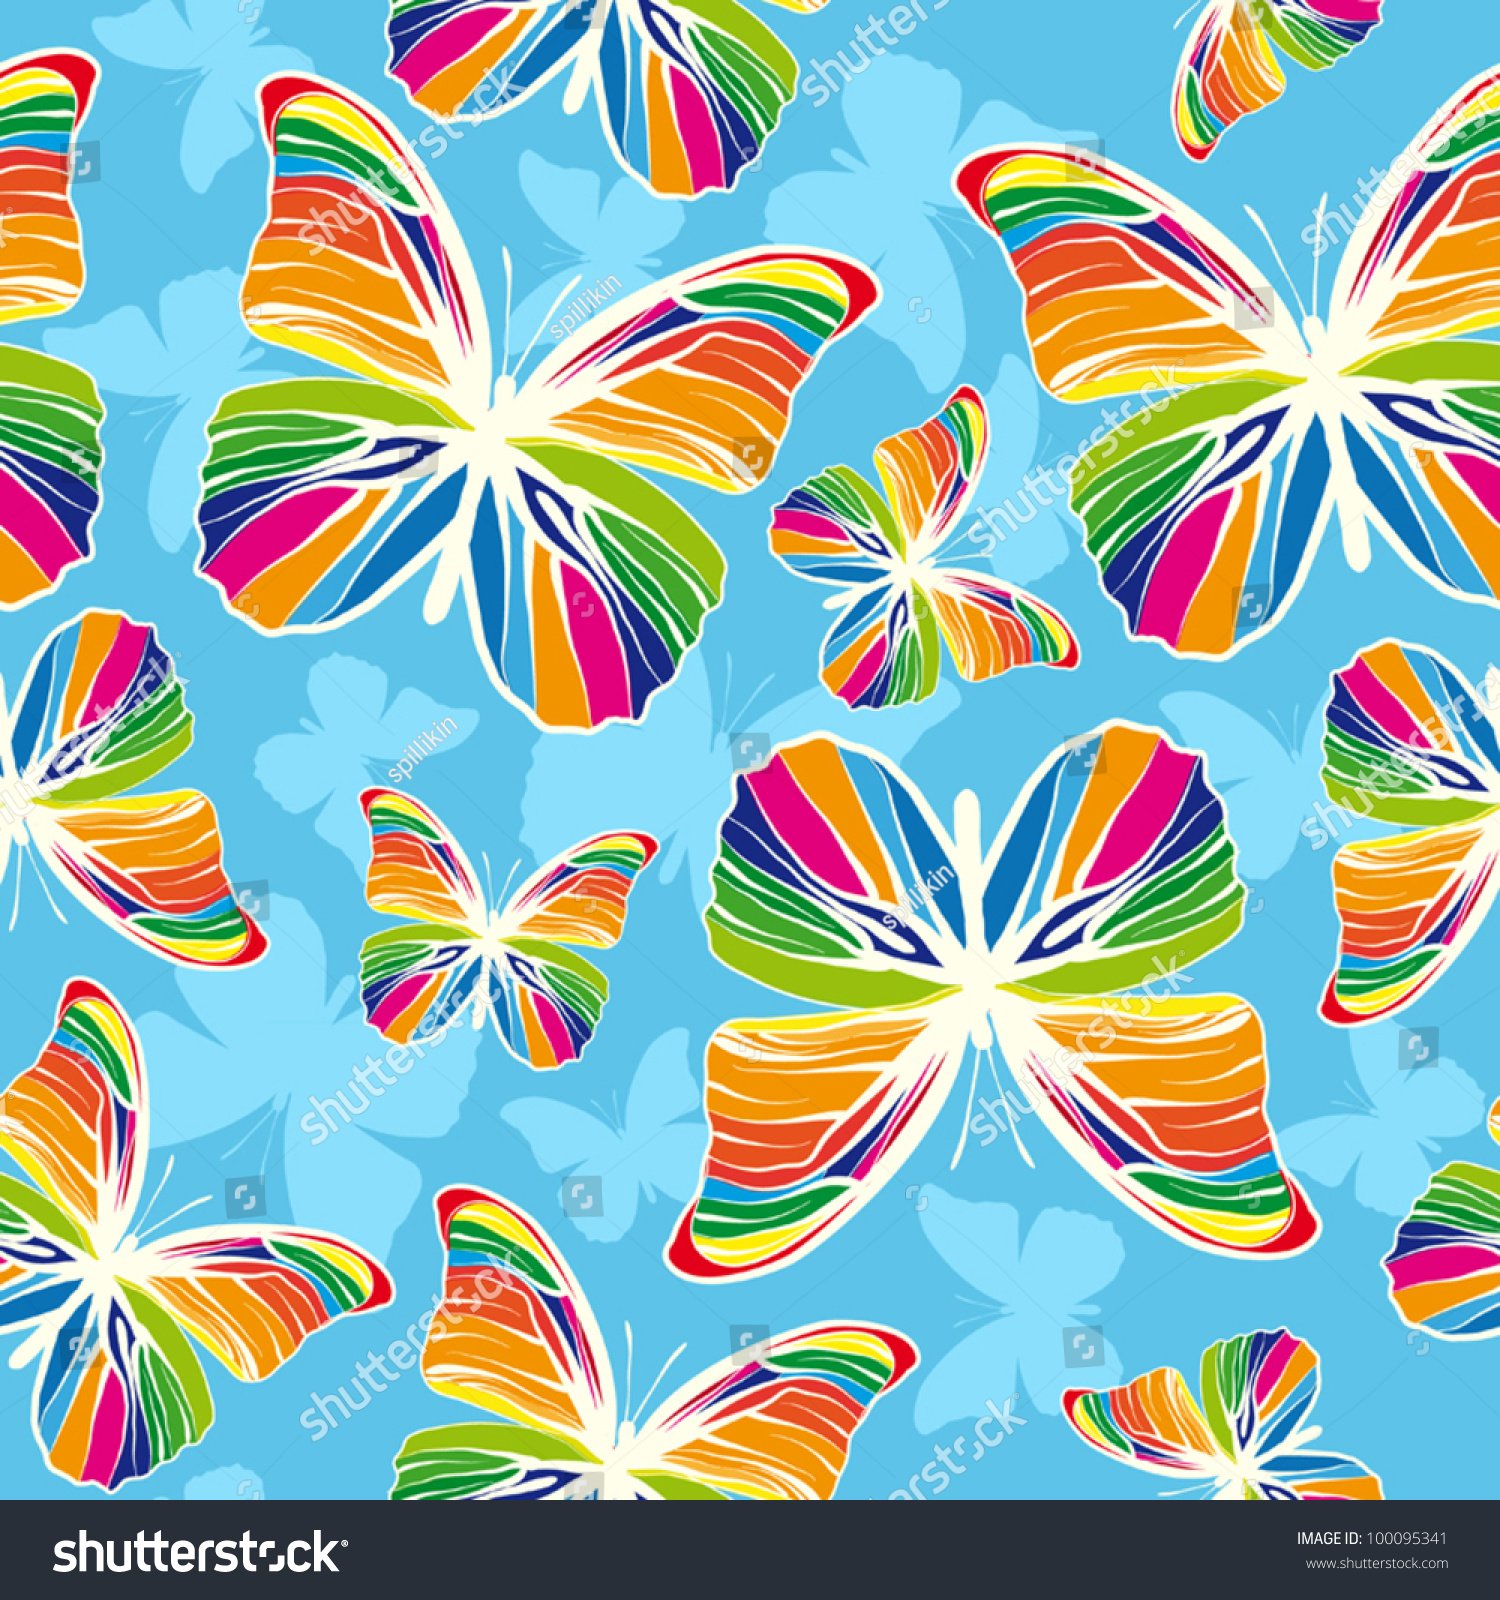 Rainbow Butterflies On Blue Background Stock Vector Illustration ...